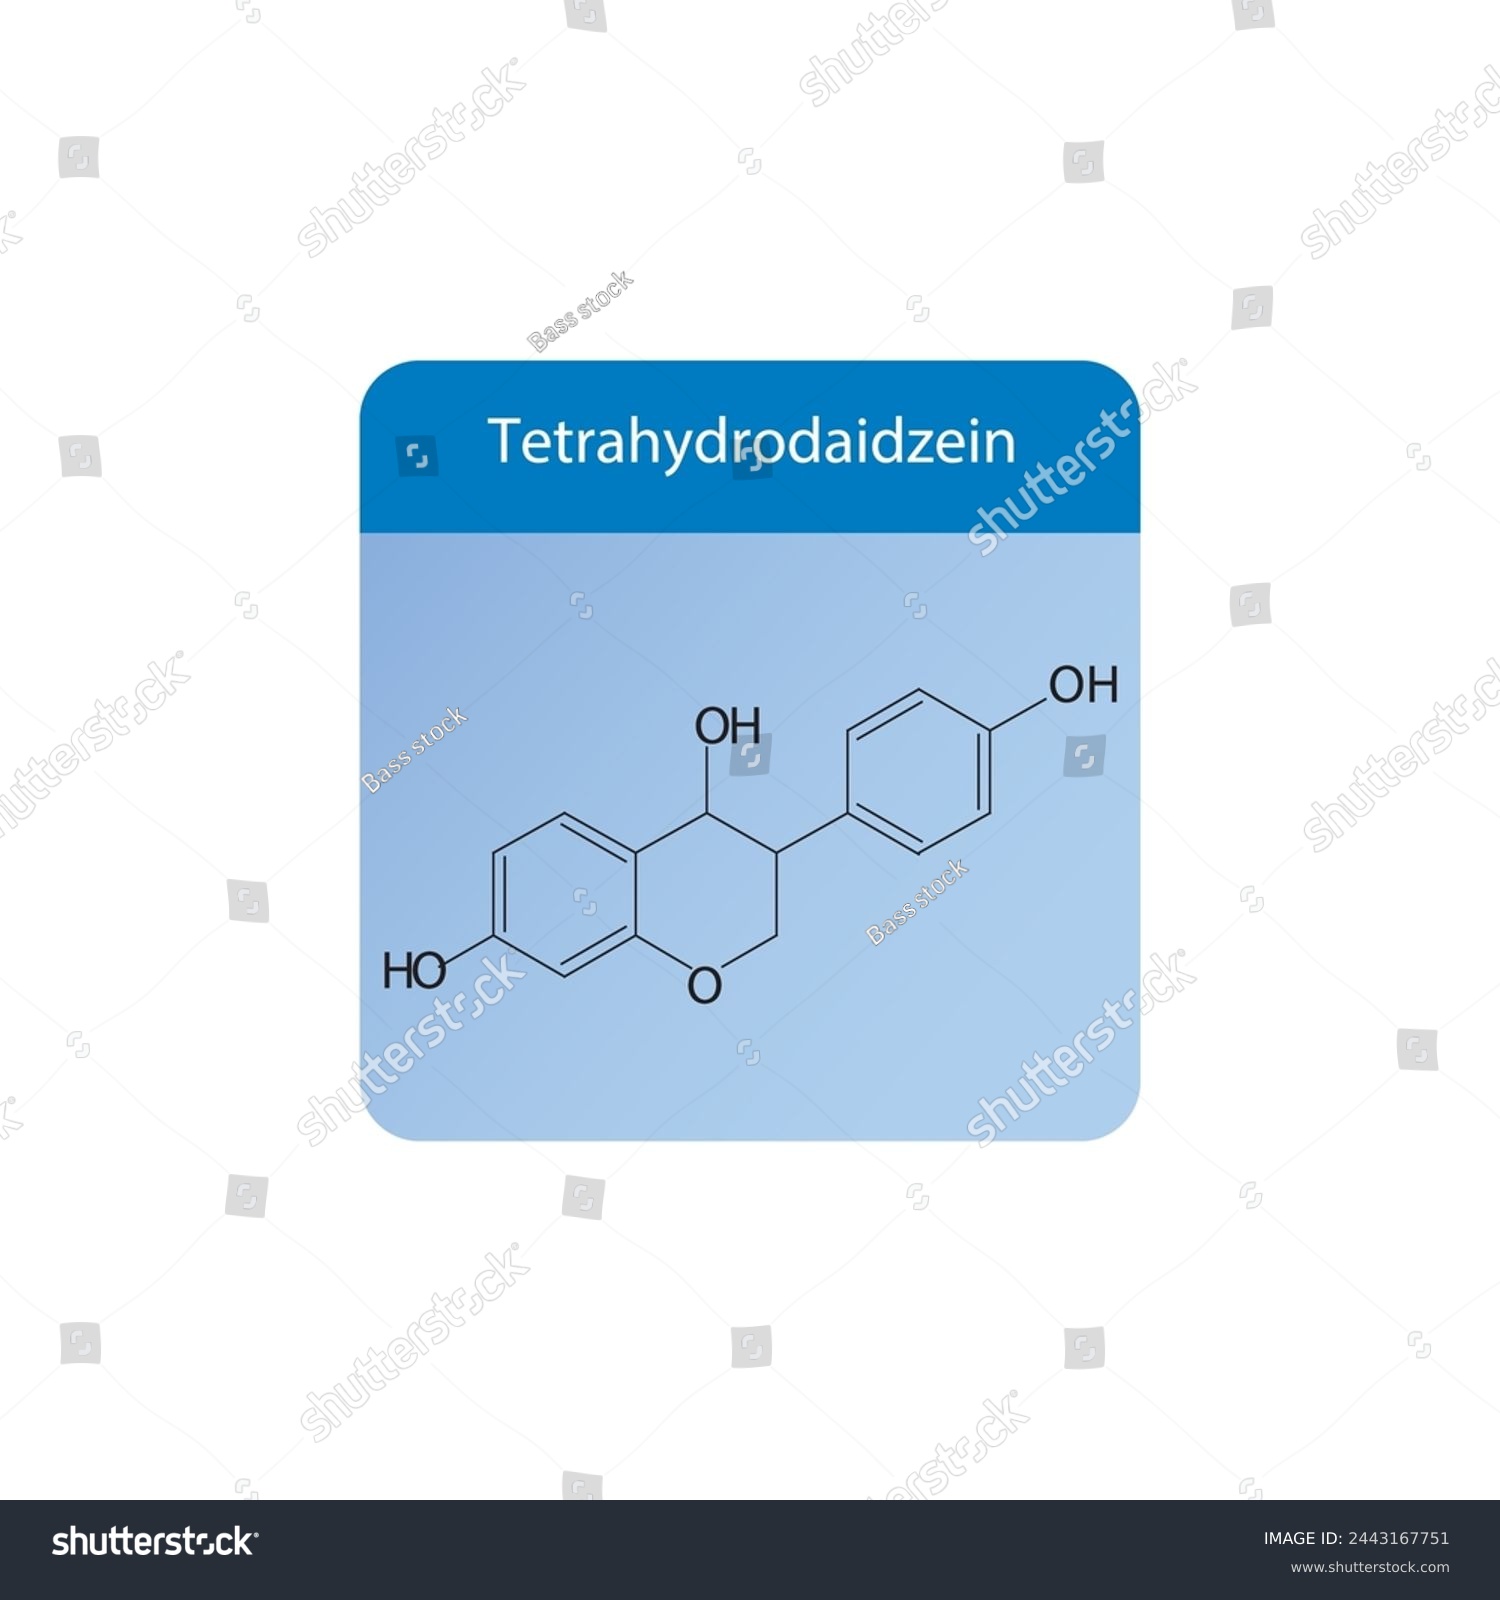 SVG of Tetrahydrodaidzein skeletal structure diagram.Isoflavanone compound molecule scientific illustration on blue background. svg